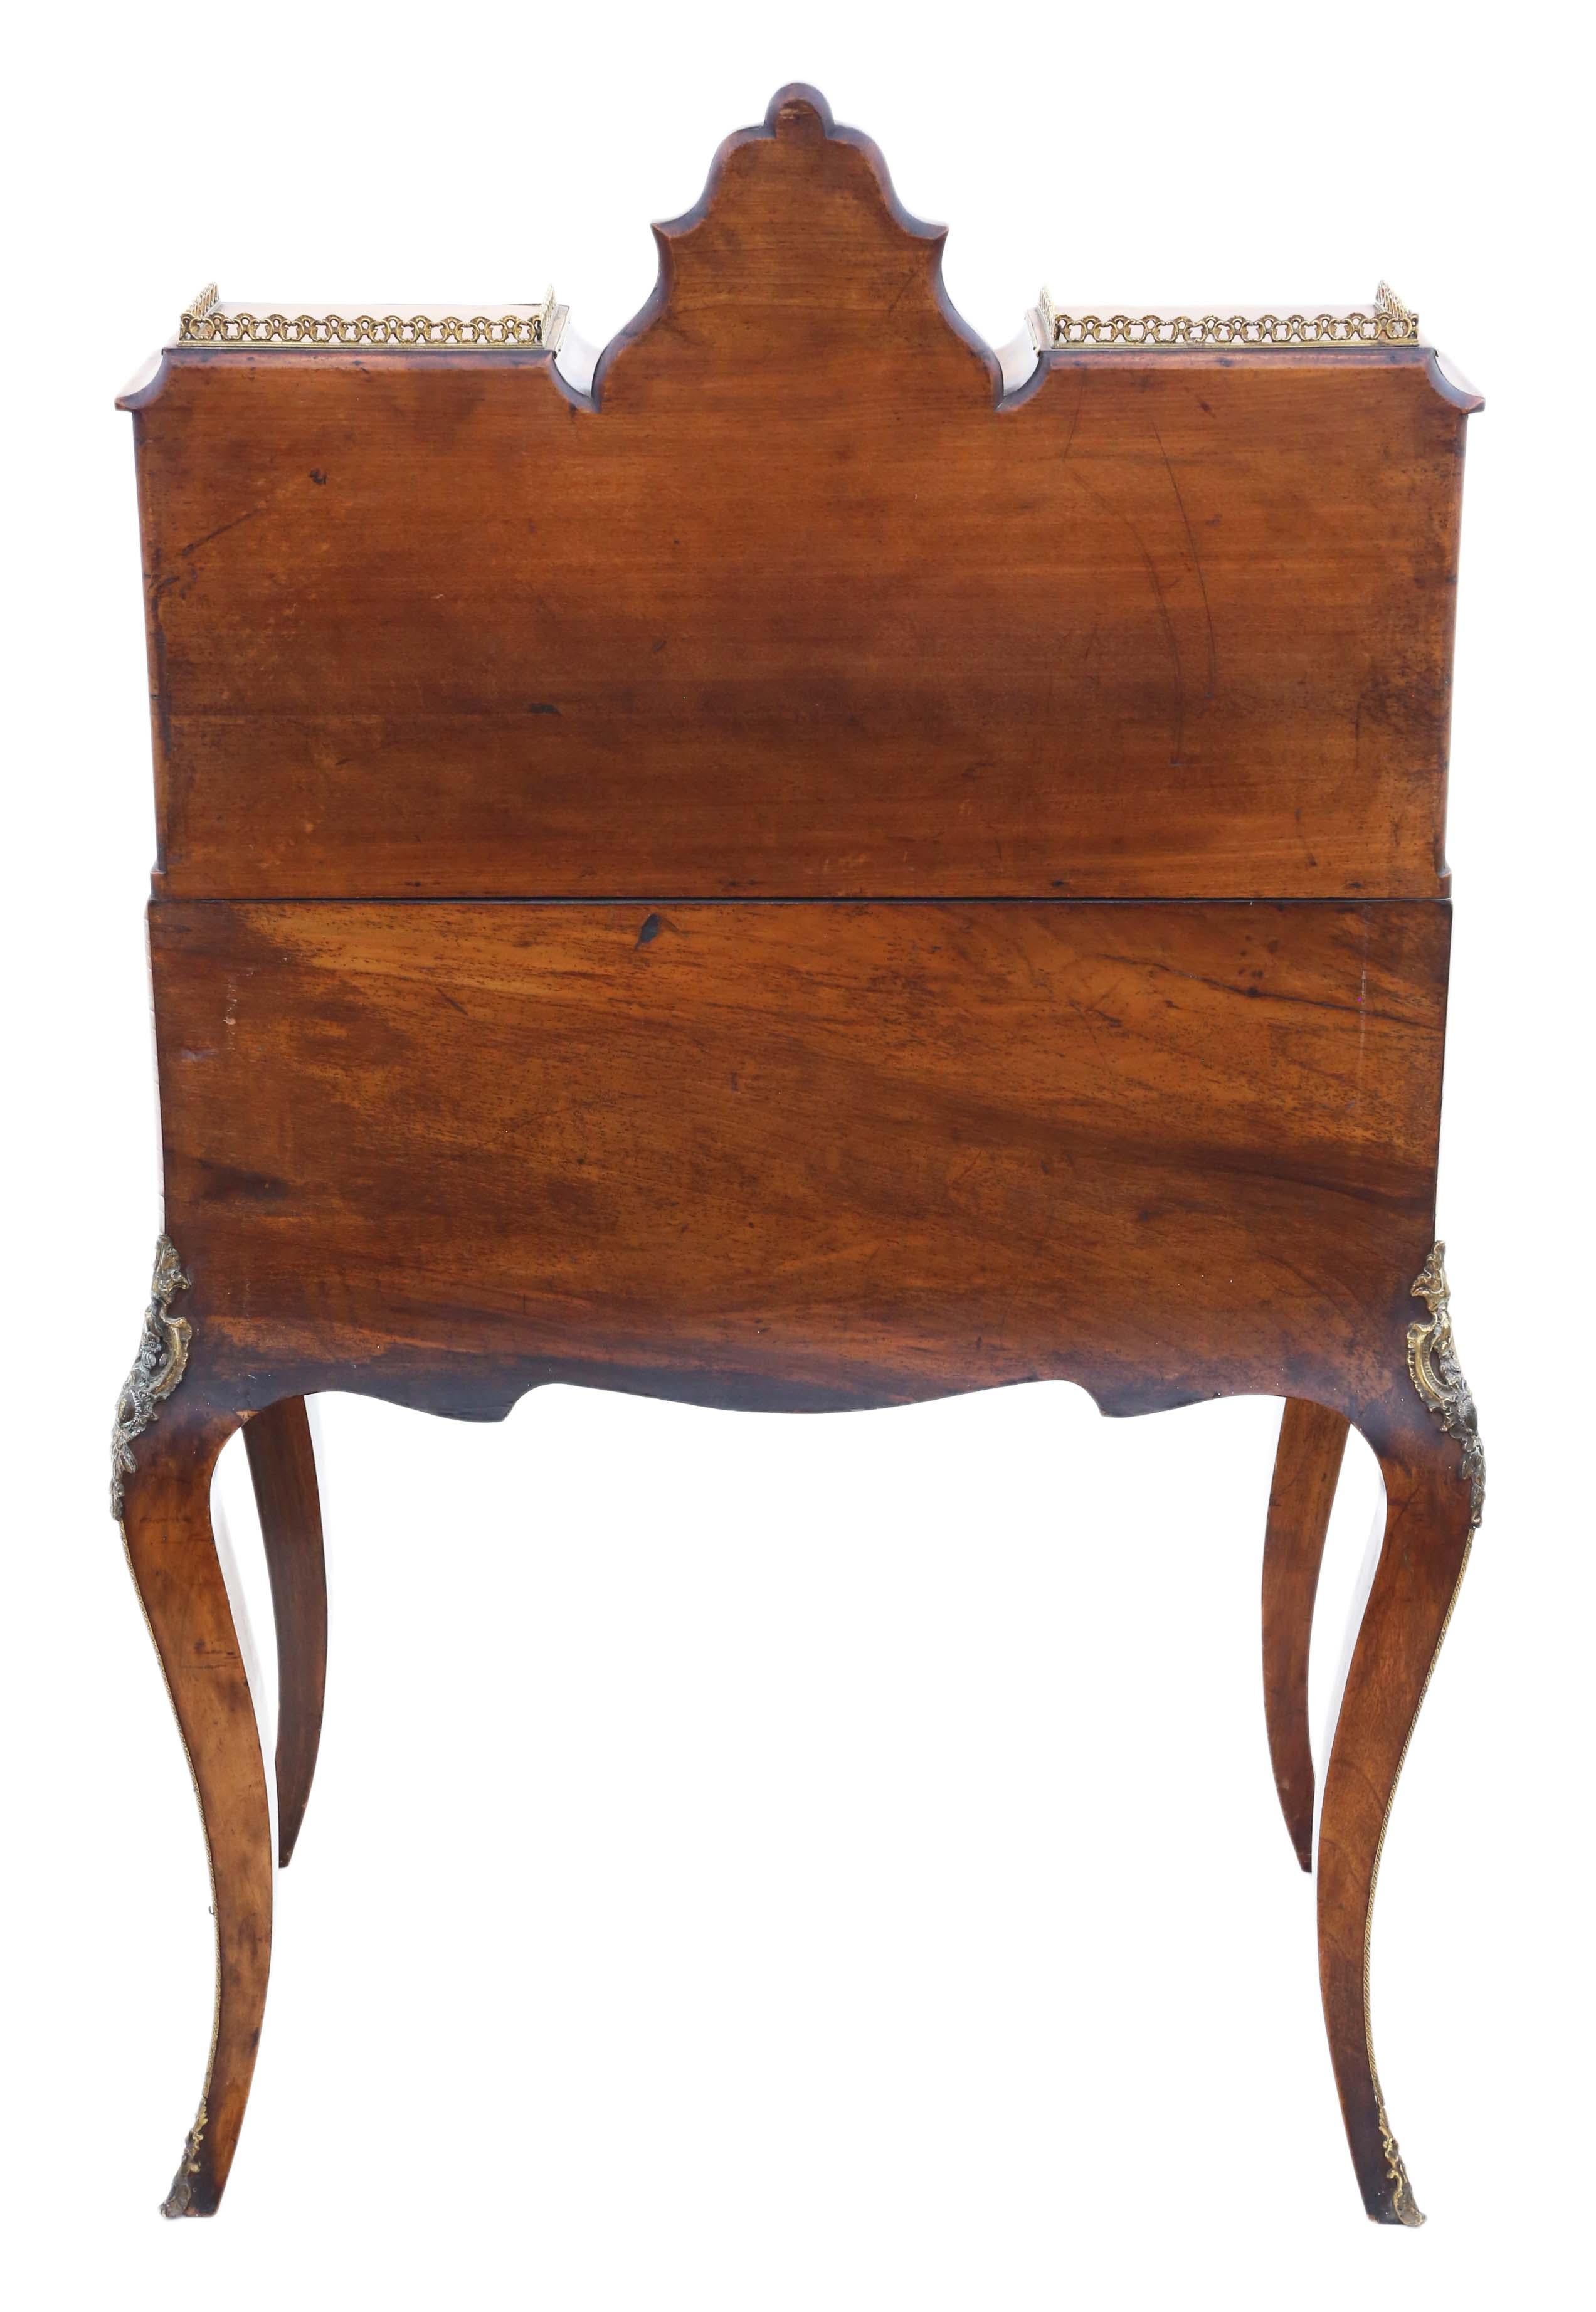 Antique Fine Quality Inlaid Burr Walnut Bonheur De Jour Desk Writing Table For Sale 6